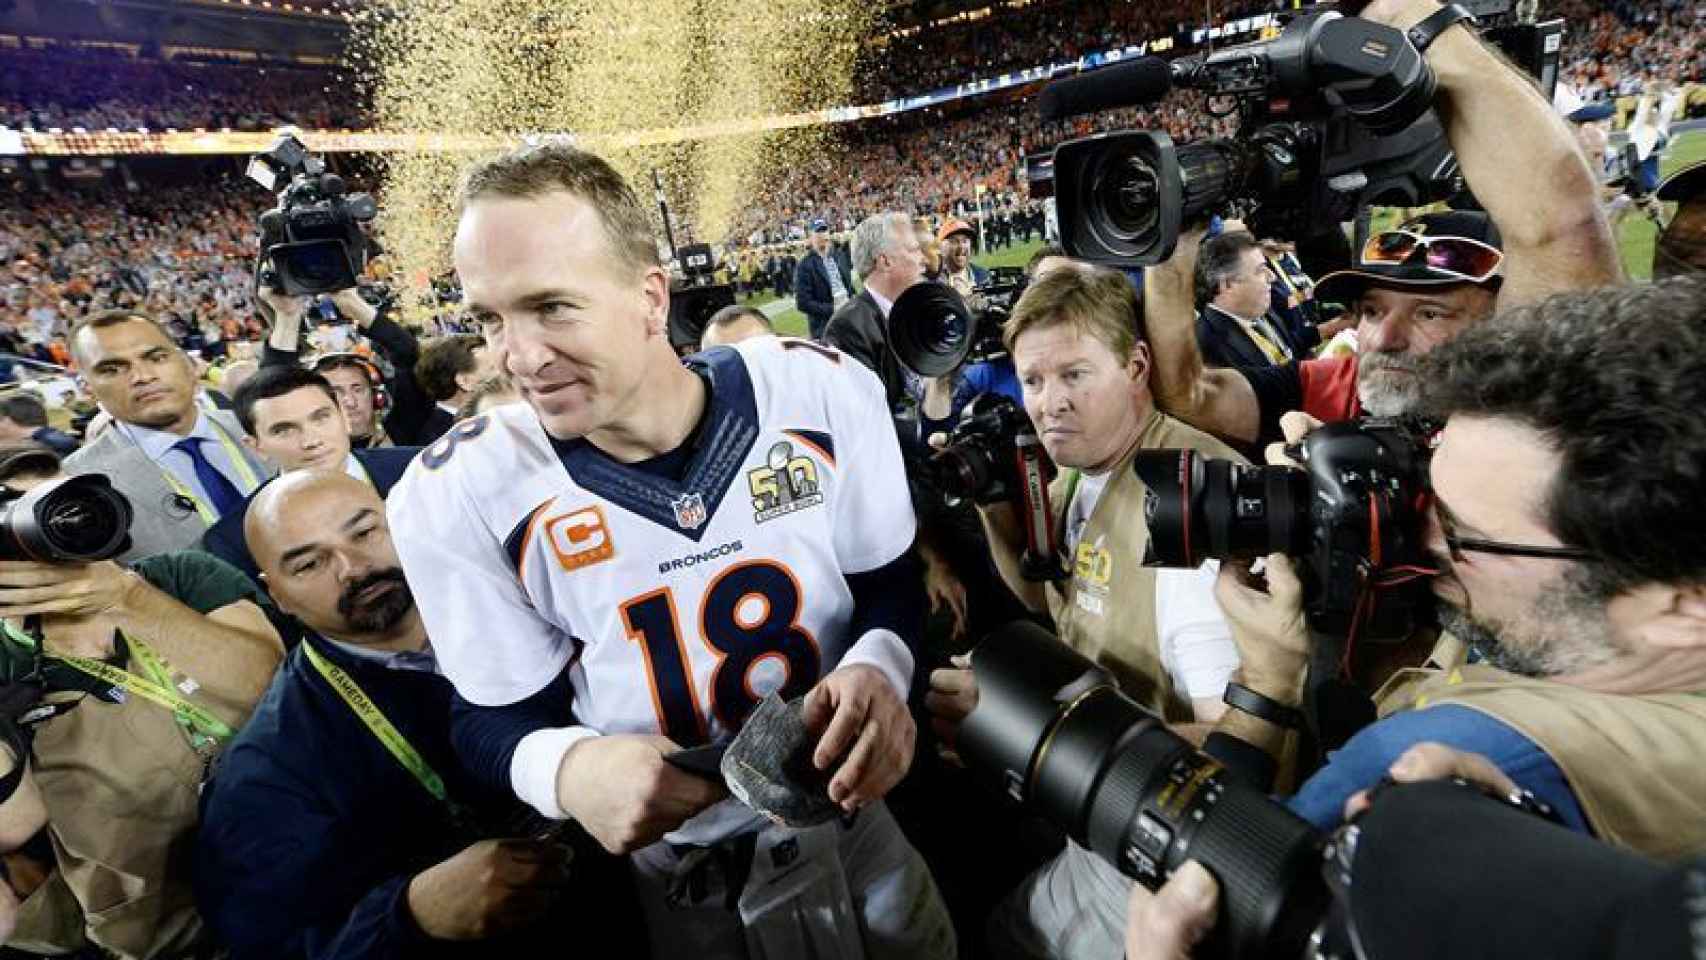 El quarterback d elos Broncos de Denver, Peyton Manning, celebra la victoria al final del partido.